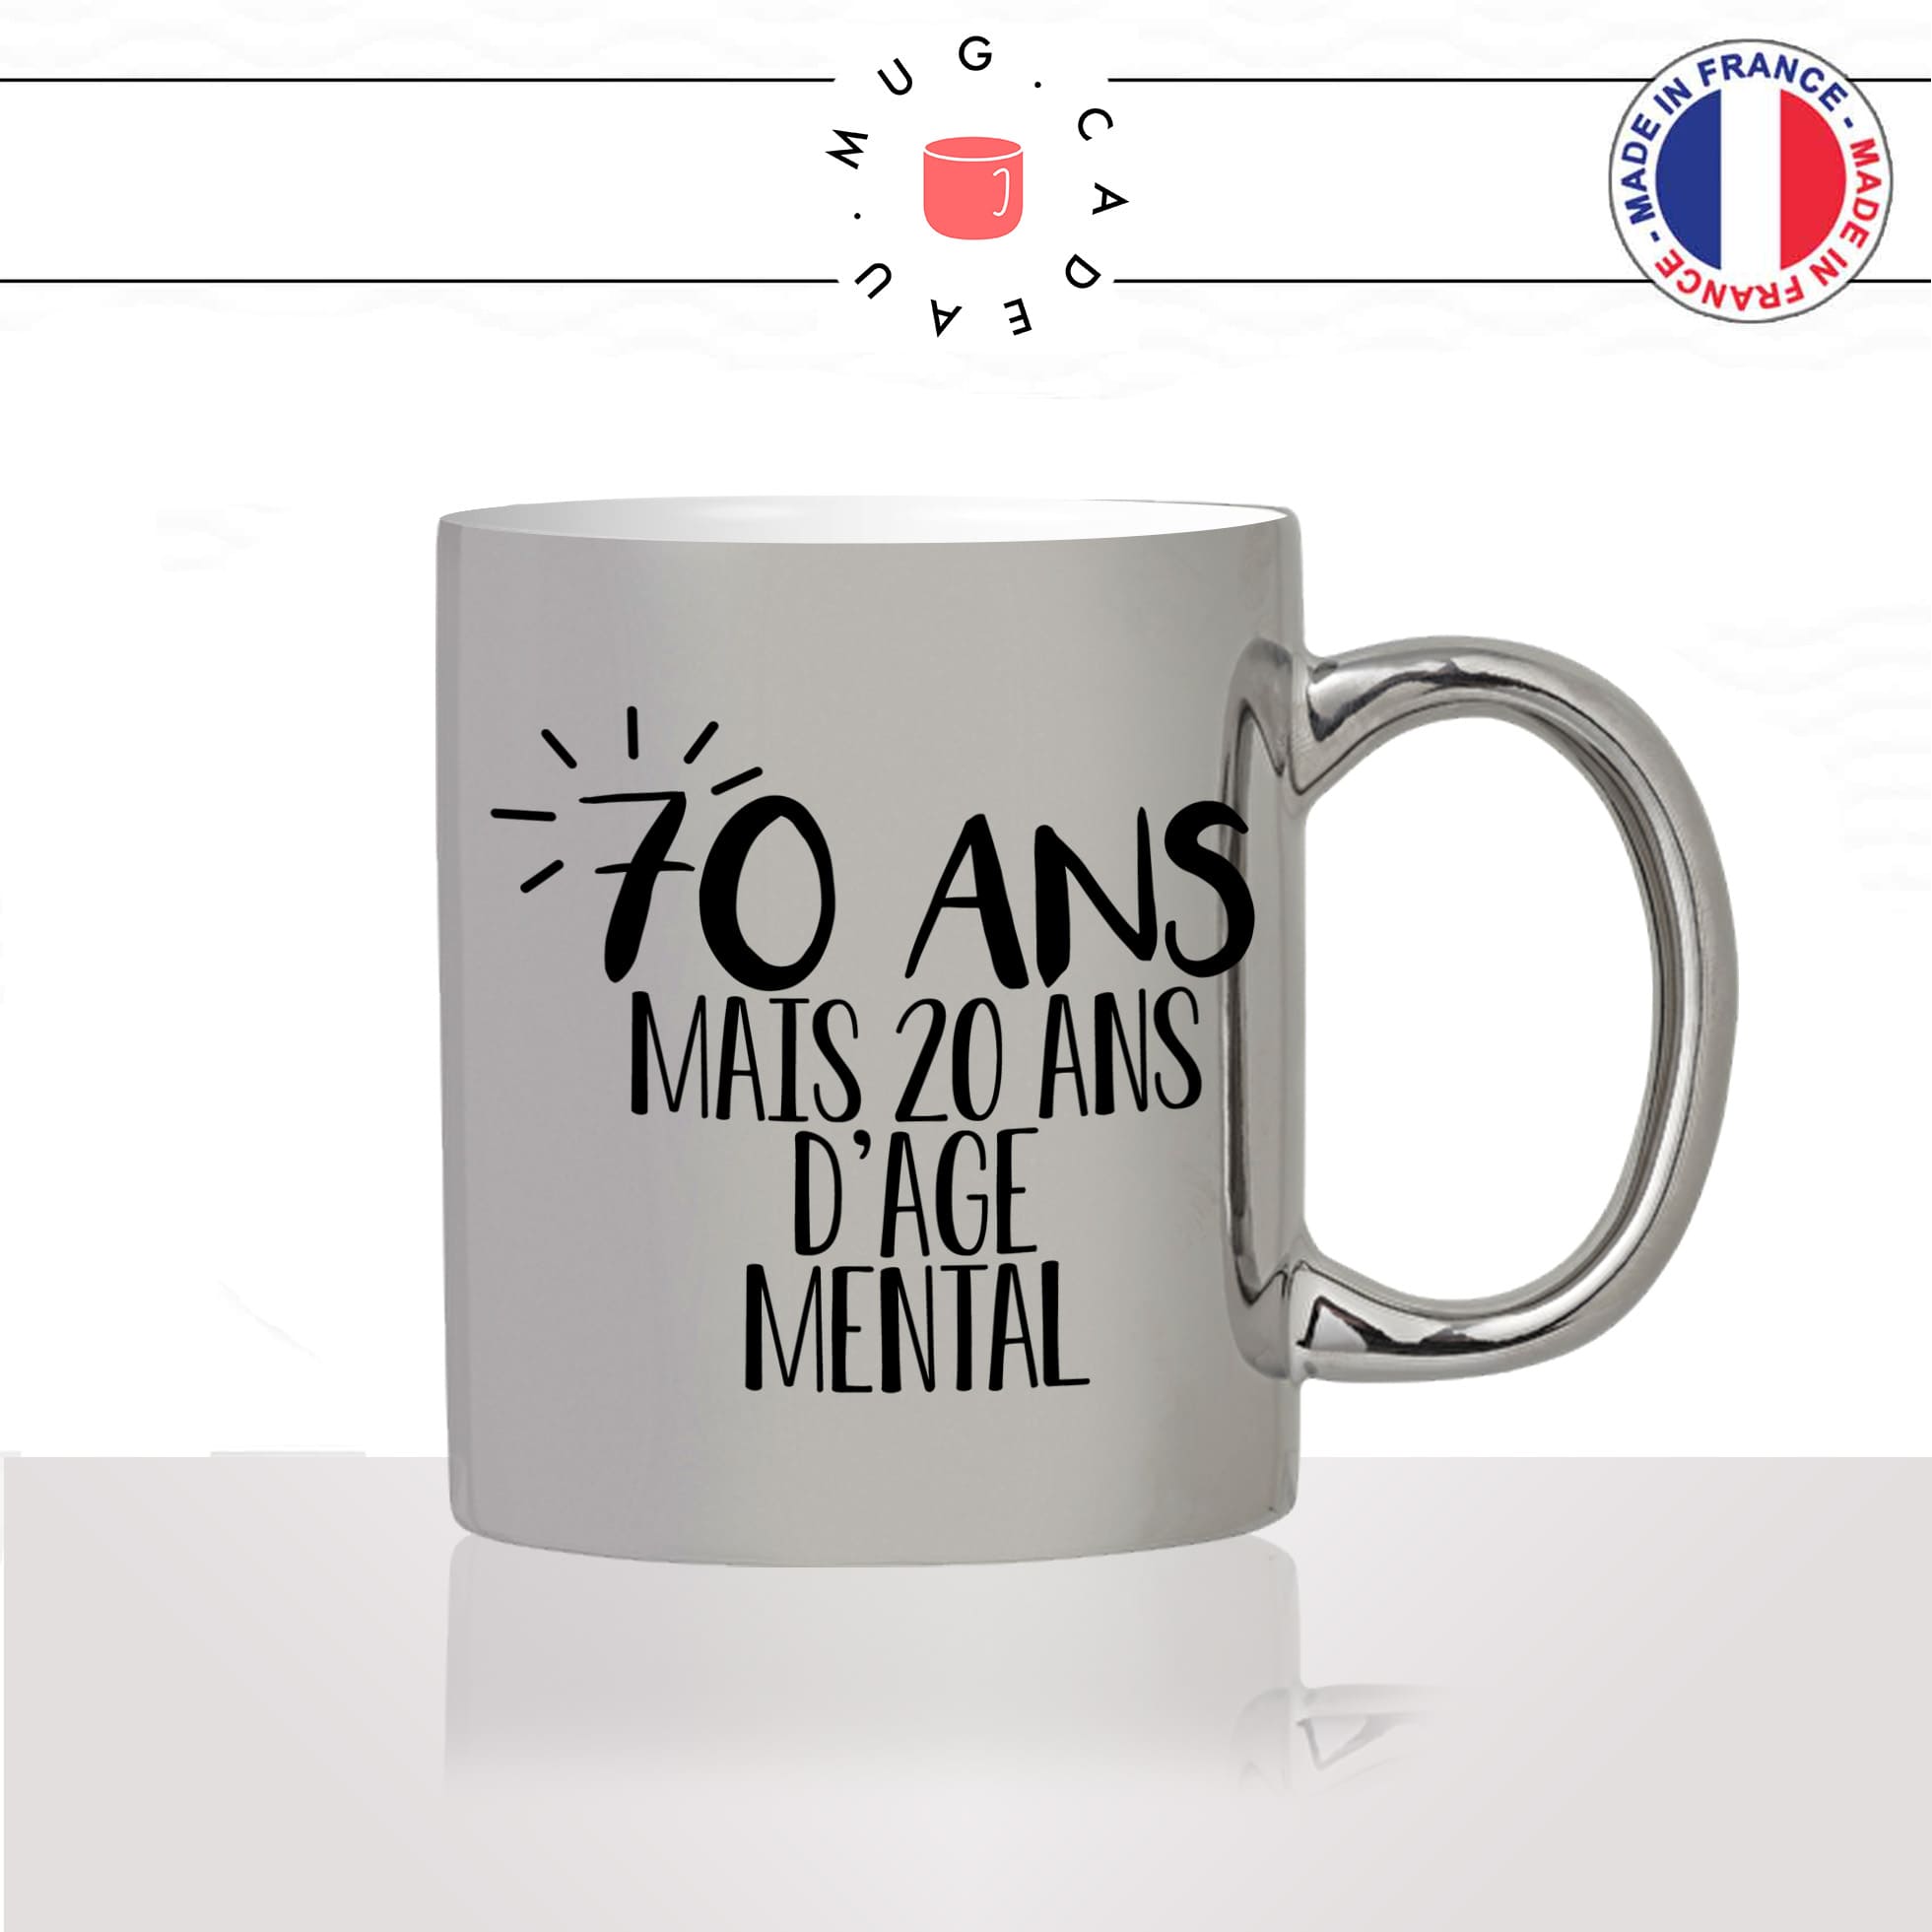 mug-tasse-argent-argenté-silver-anniversaire-20-ans-dage-mental-70-ans-age-personnalisable - unique-idée-cadeau-fun-cool-café-thé2